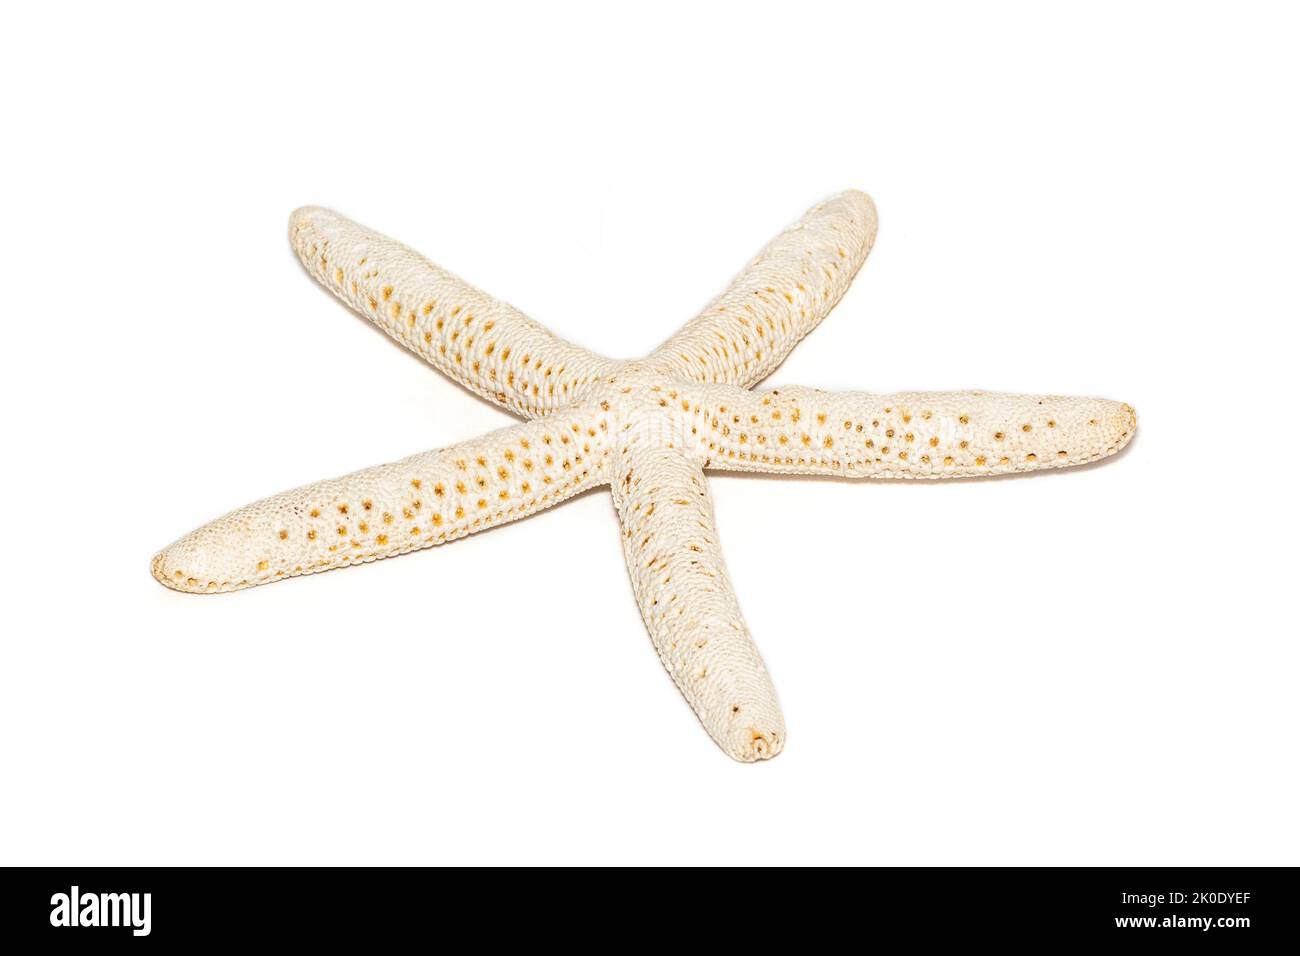 Immagine di stelle marine bianche isolate su sfondo bianco. Stelle del mare. Animali sottomarini. Conchiglie di mare. Foto Stock